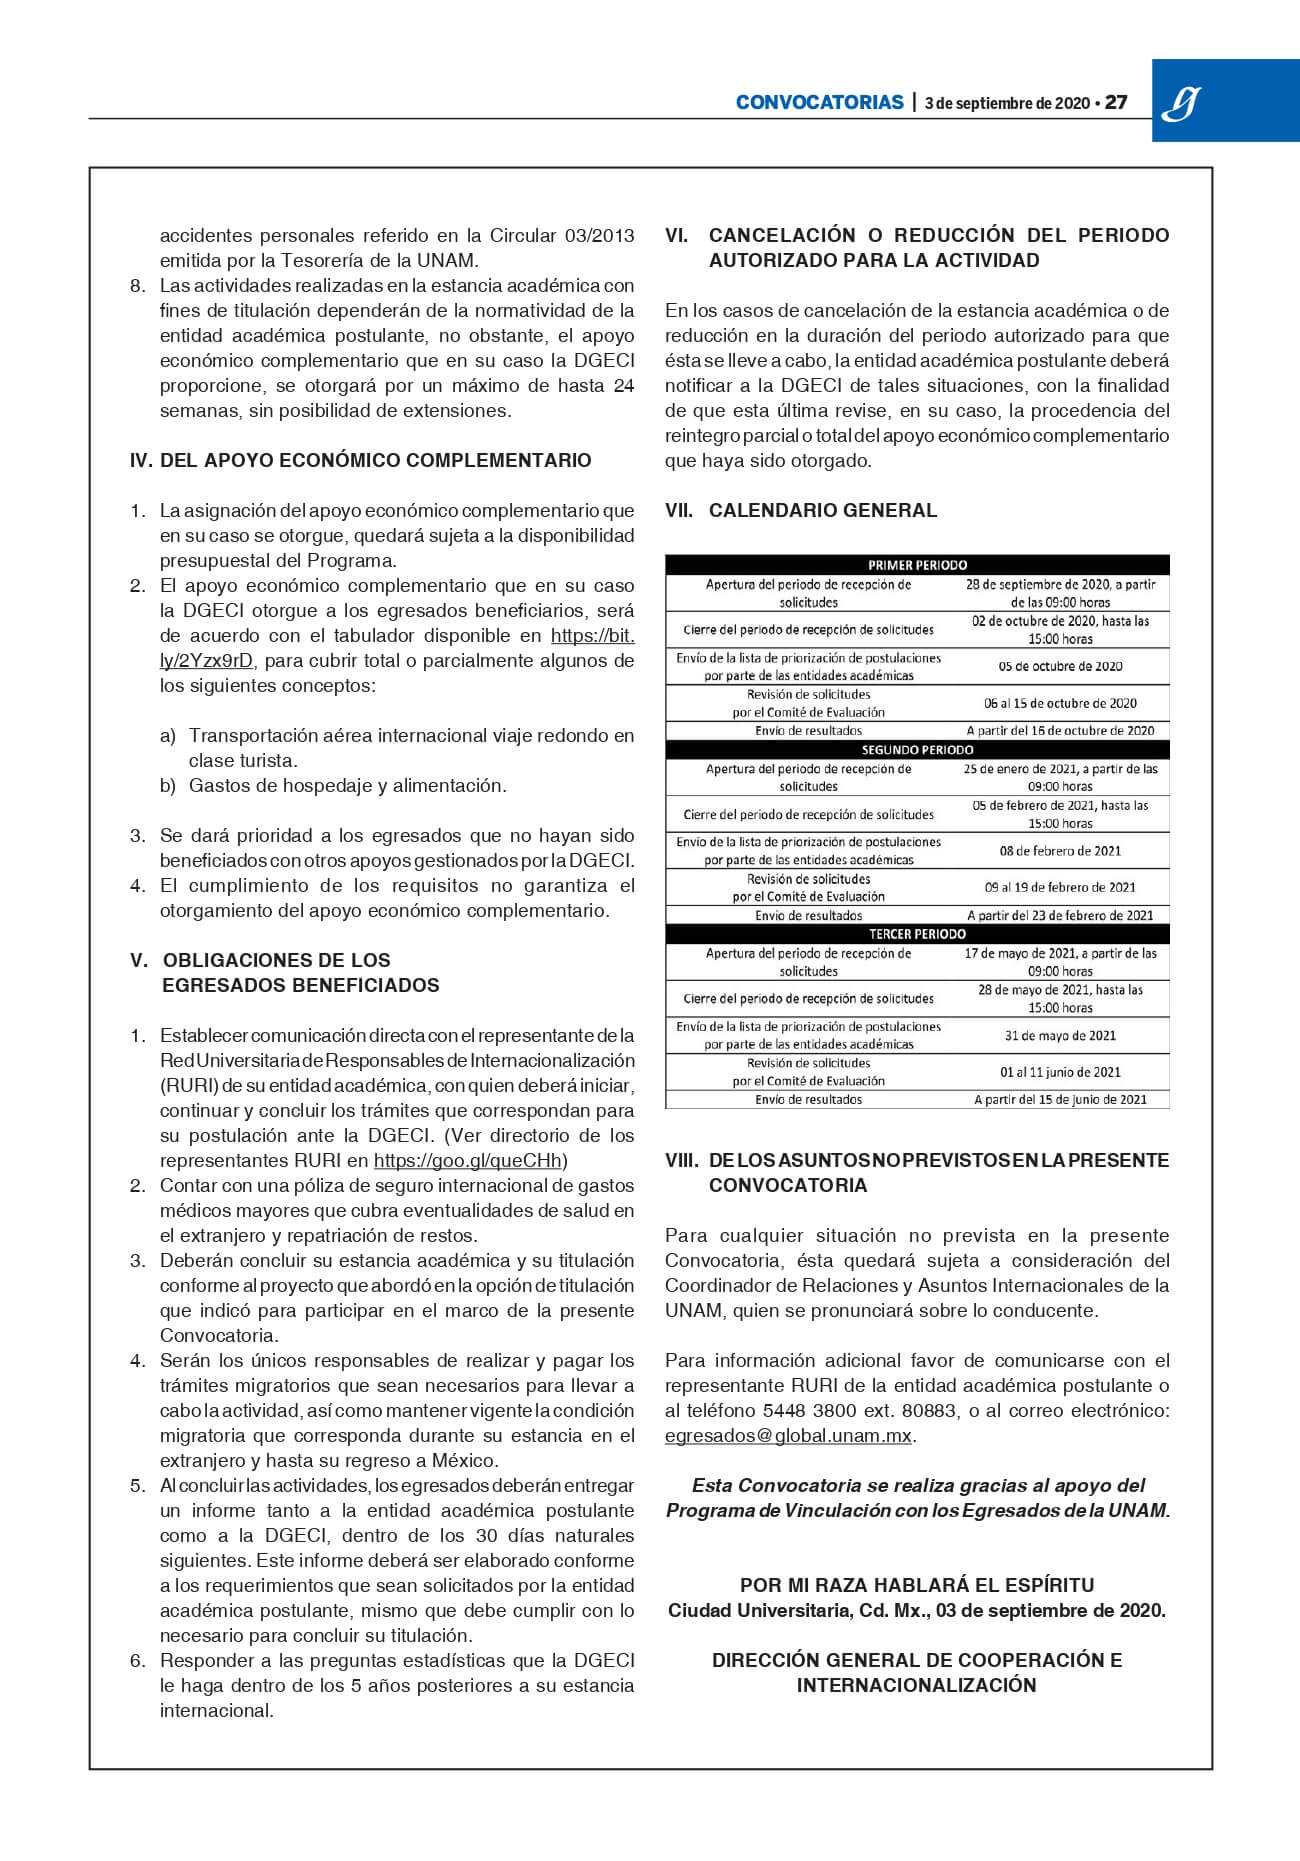 Convocatoria-Gaceta-TEE-2021_Estancias-academicas2.jpg#asset:5881